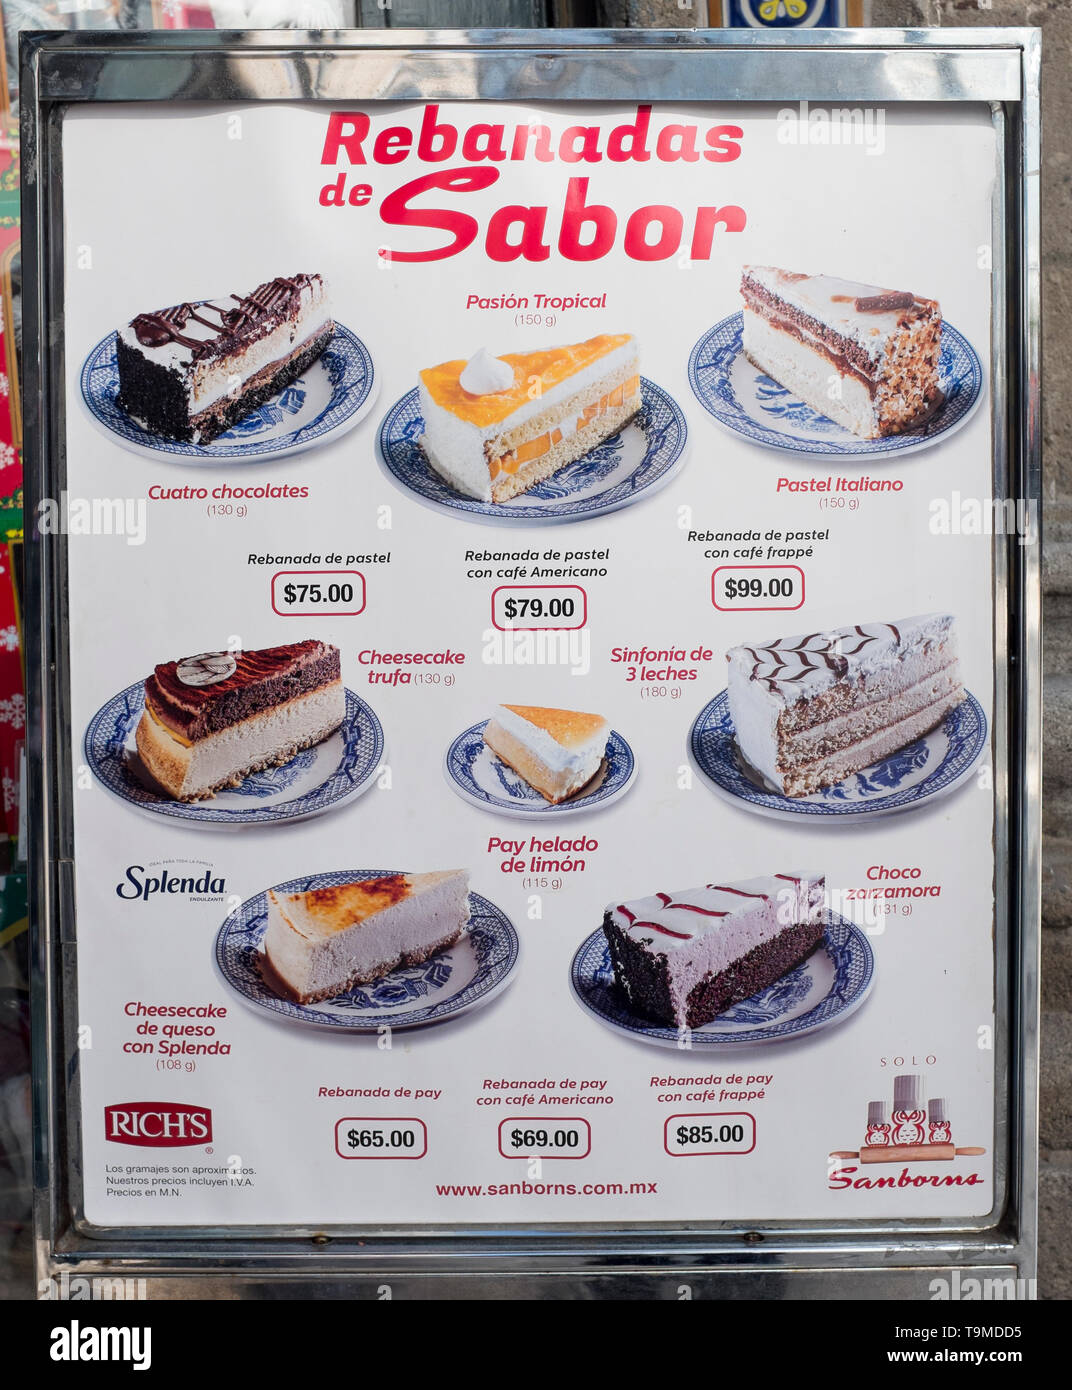 Restaurante Sanborns Junta Menú Pastel Ciudad de México Fotografía de stock  - Alamy